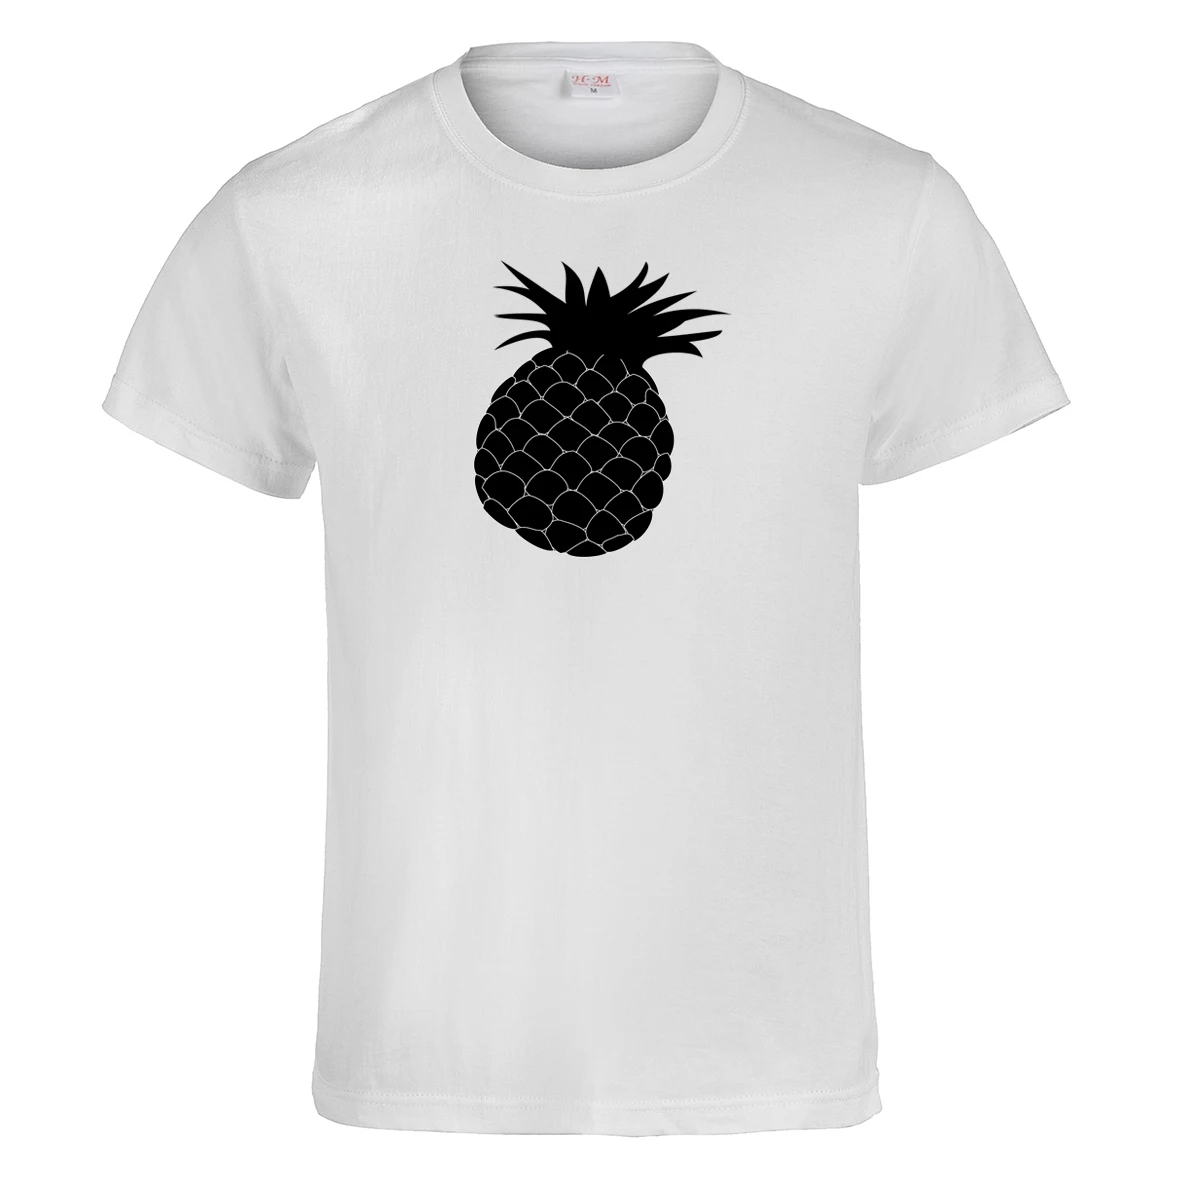 Милая футболка с принтом ананаса женская летняя одежда короткими рукавами для